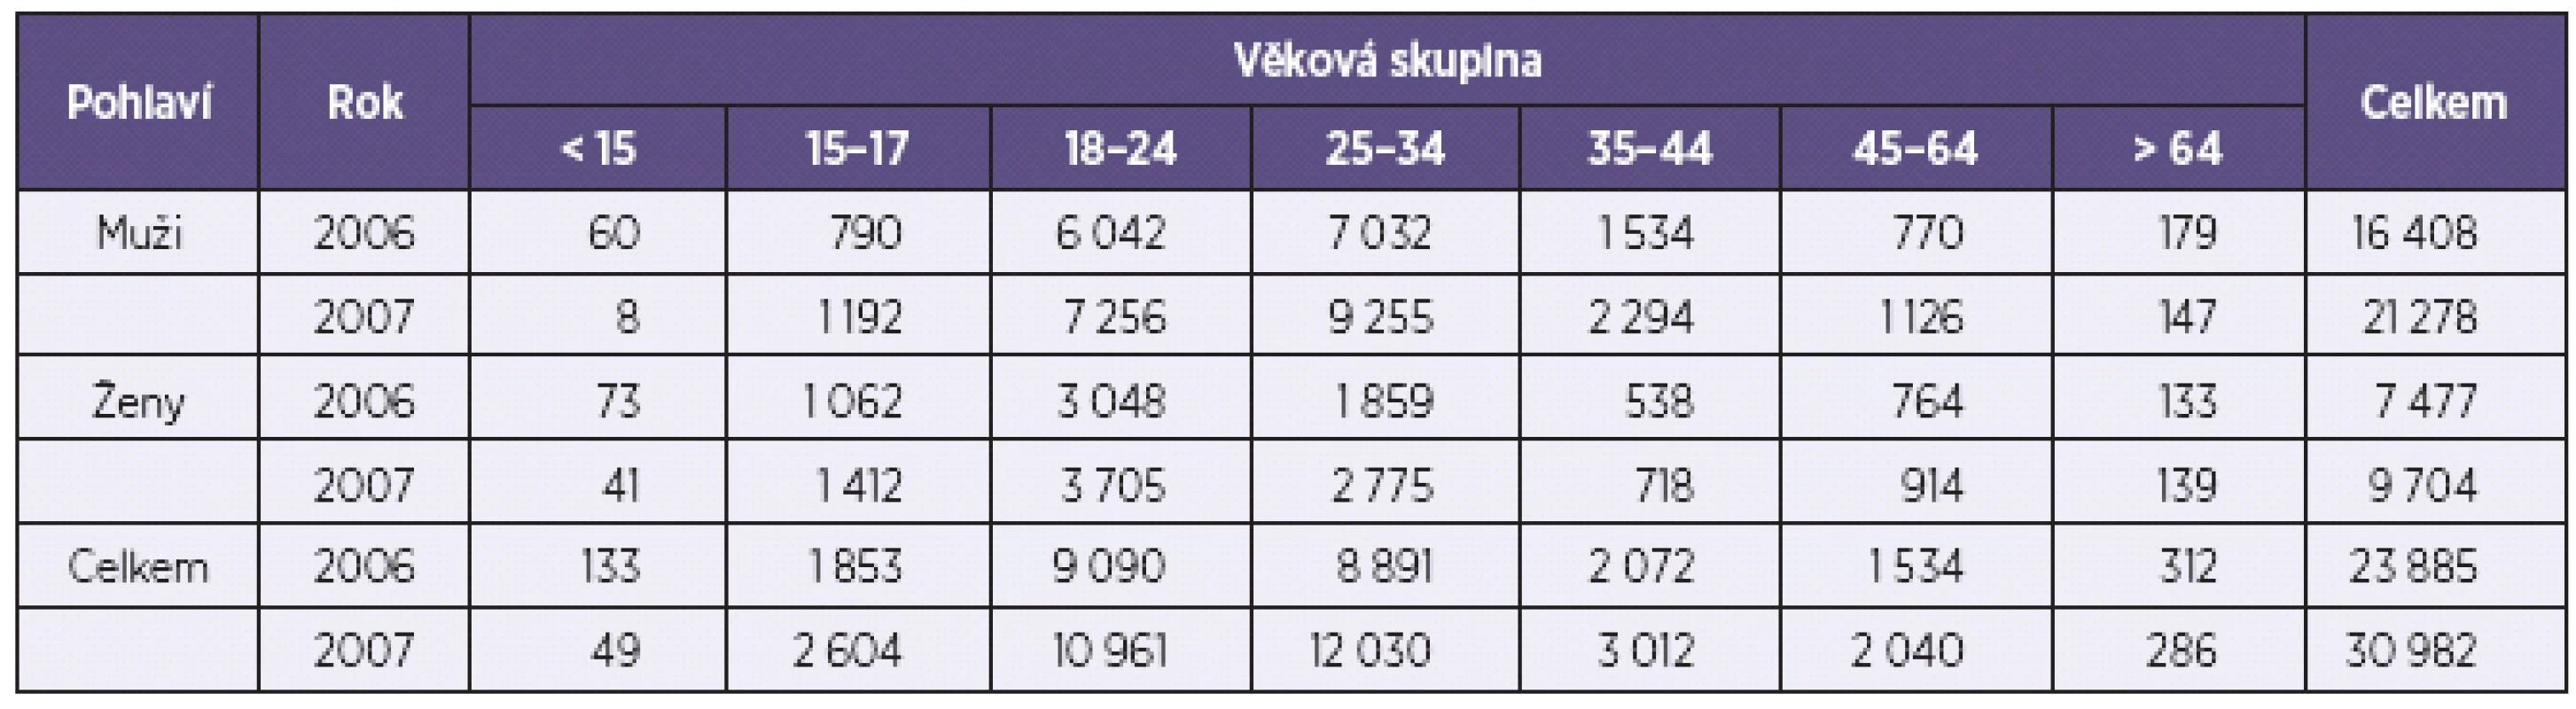 Rozložení středního odhadu PUD v ČR v letech 2006 a 2007 podle věkových skupin a pohlaví
Table 4. Age and sex distribution of central PDU estimates in the Czech Republic in 2006 and 2007